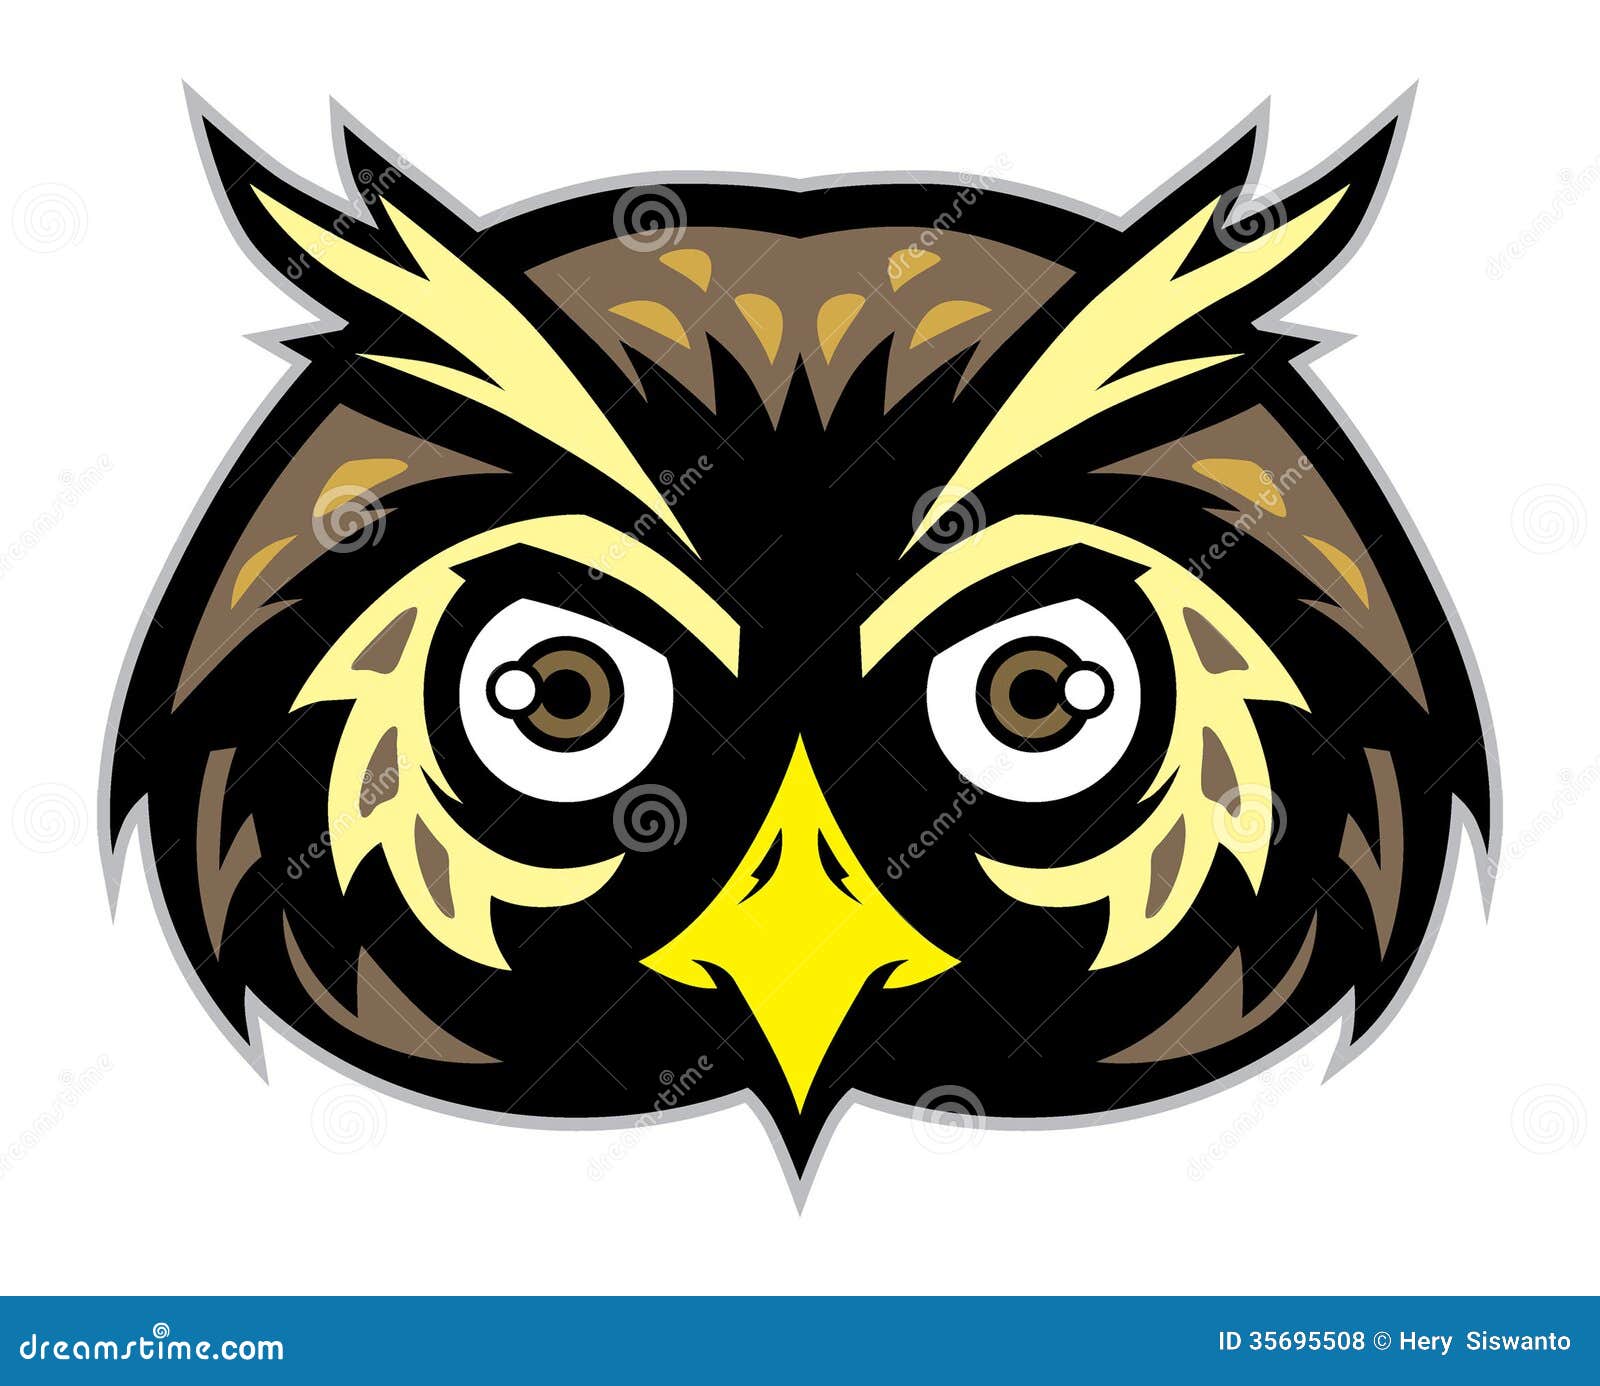 owl mascot clipart - photo #22